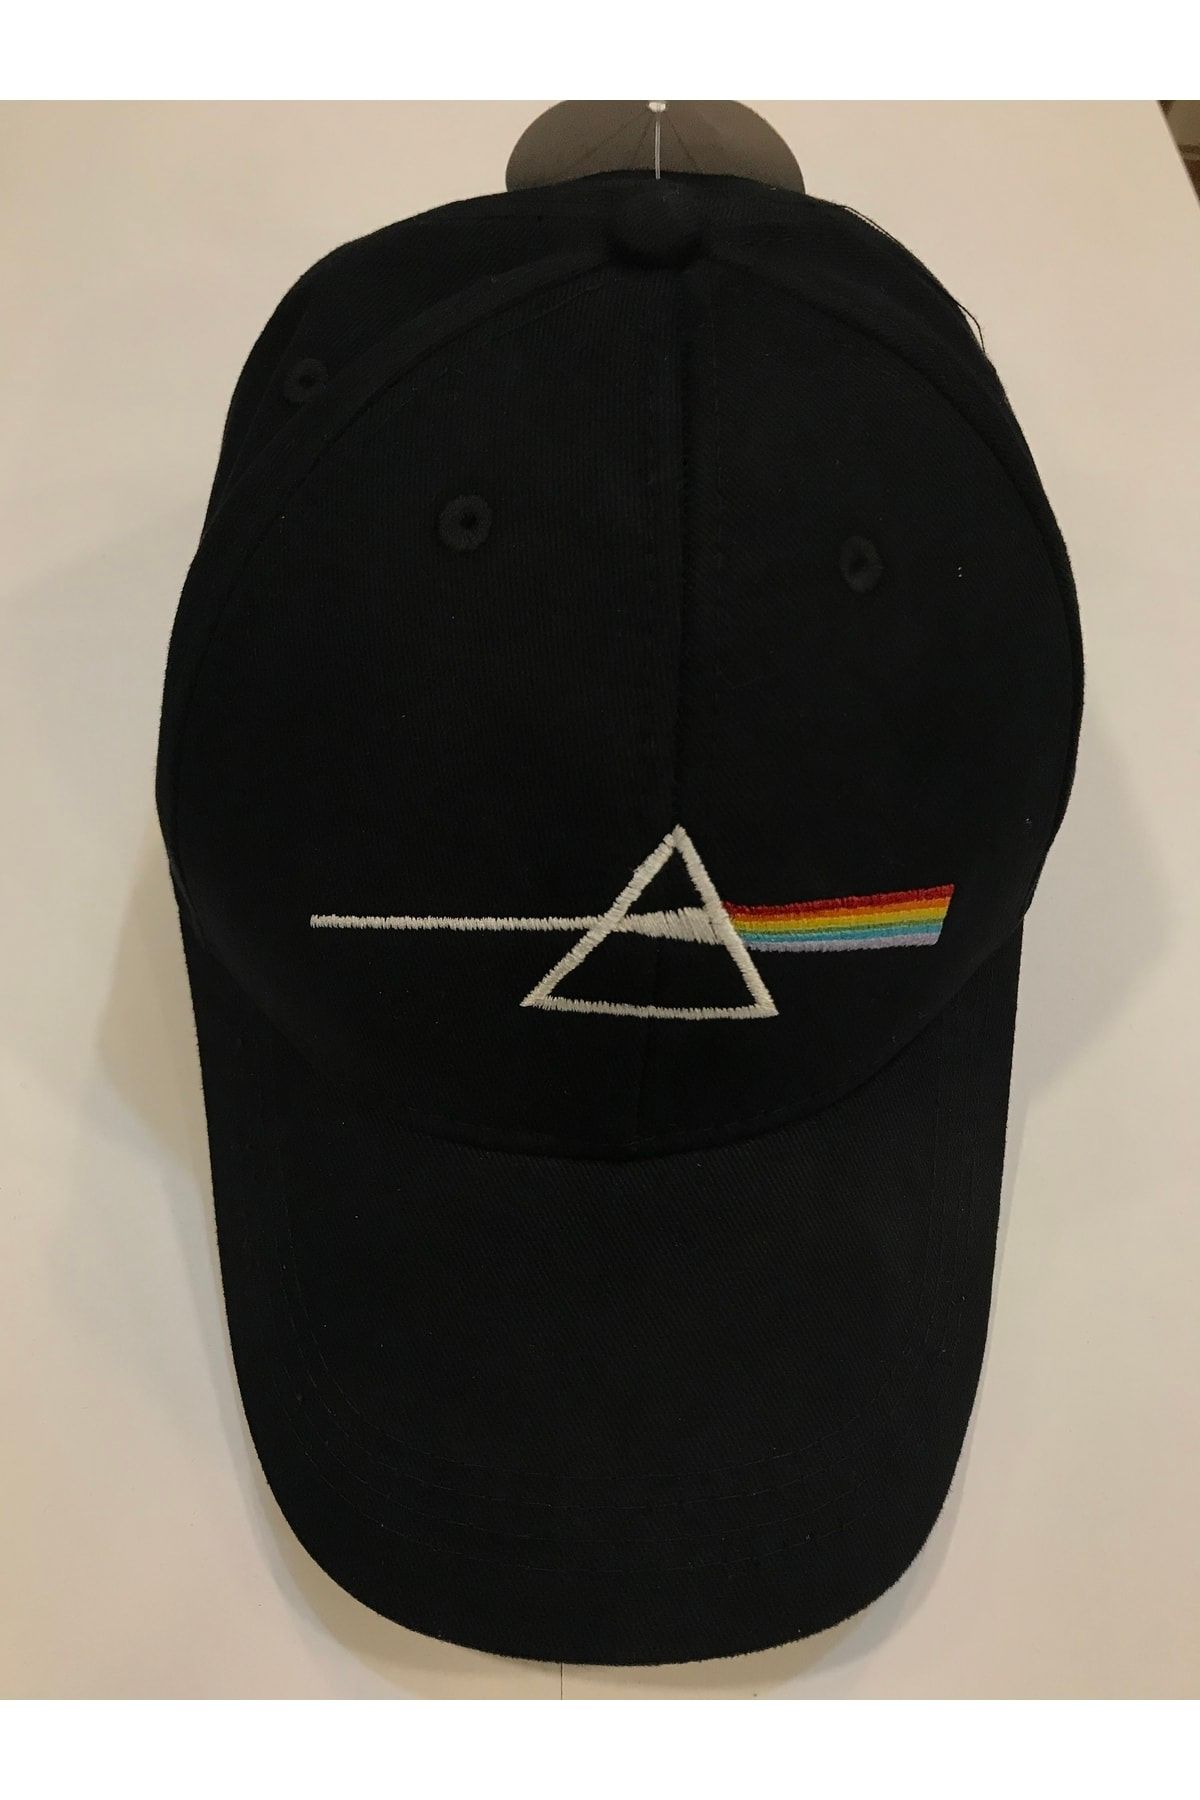 Orijin Tekstil Pink Floyd Nakışlı Unisex Siyah Şapka